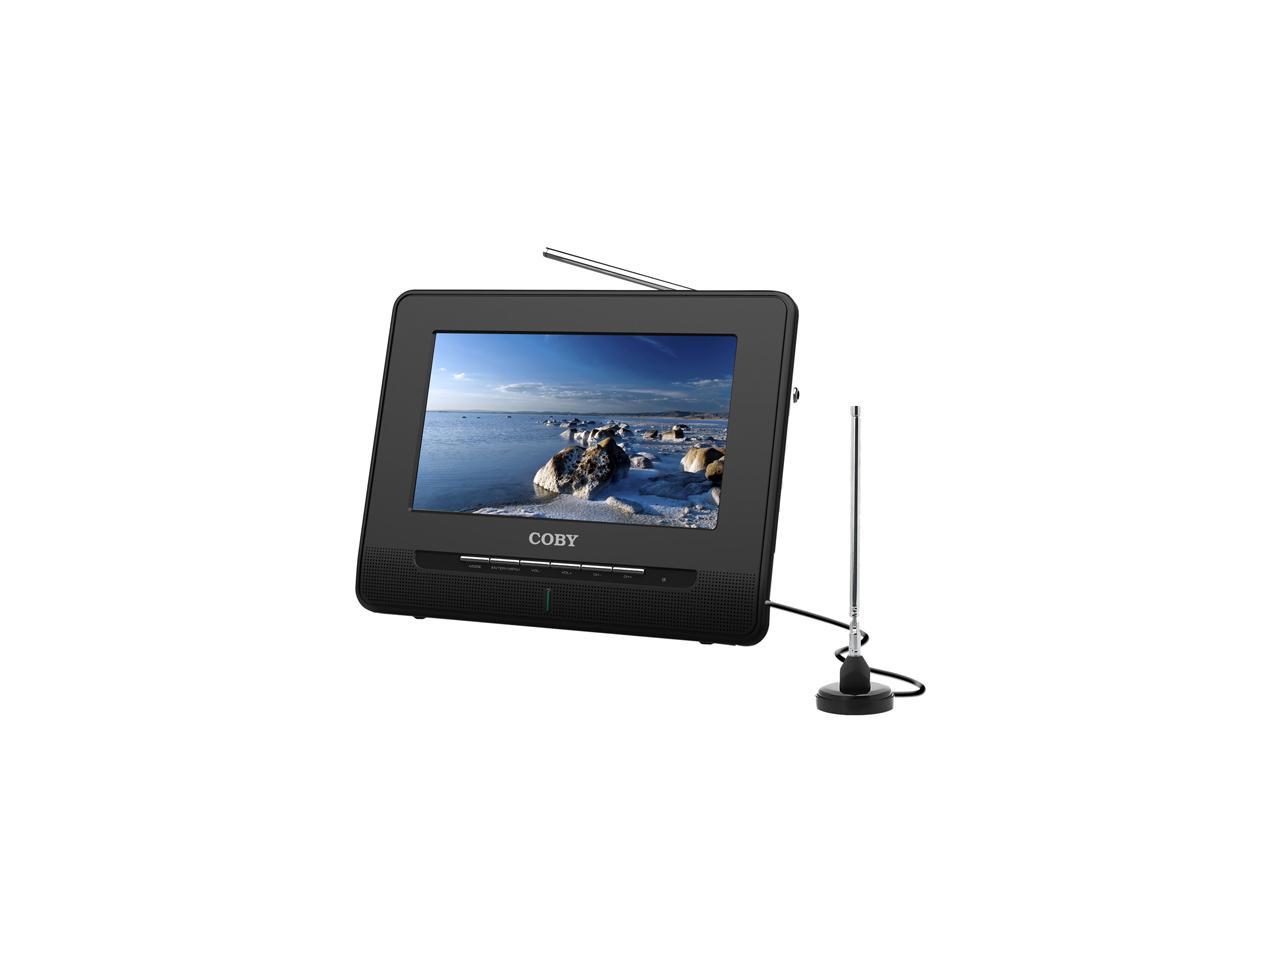 Coby 9" Portable Digital LCD TV - Newegg.com